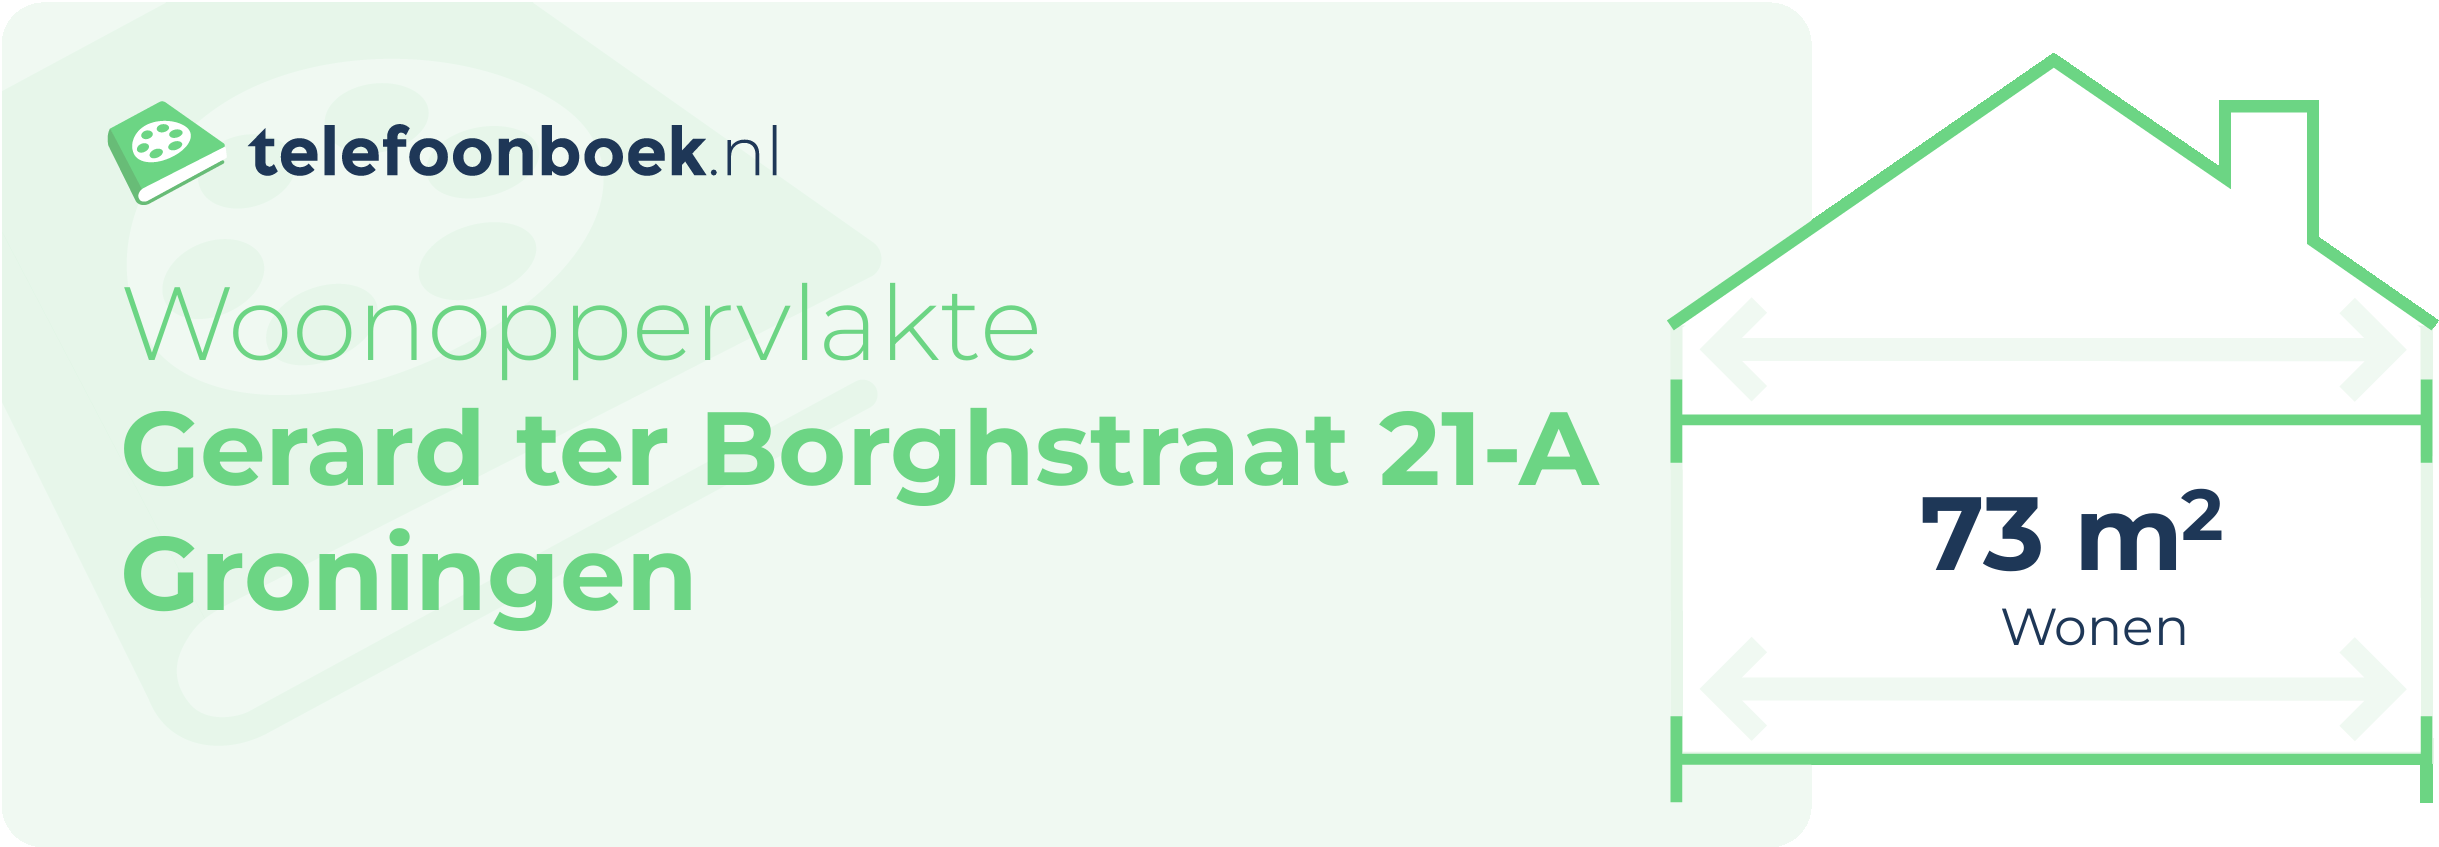 Woonoppervlakte Gerard Ter Borghstraat 21-A Groningen